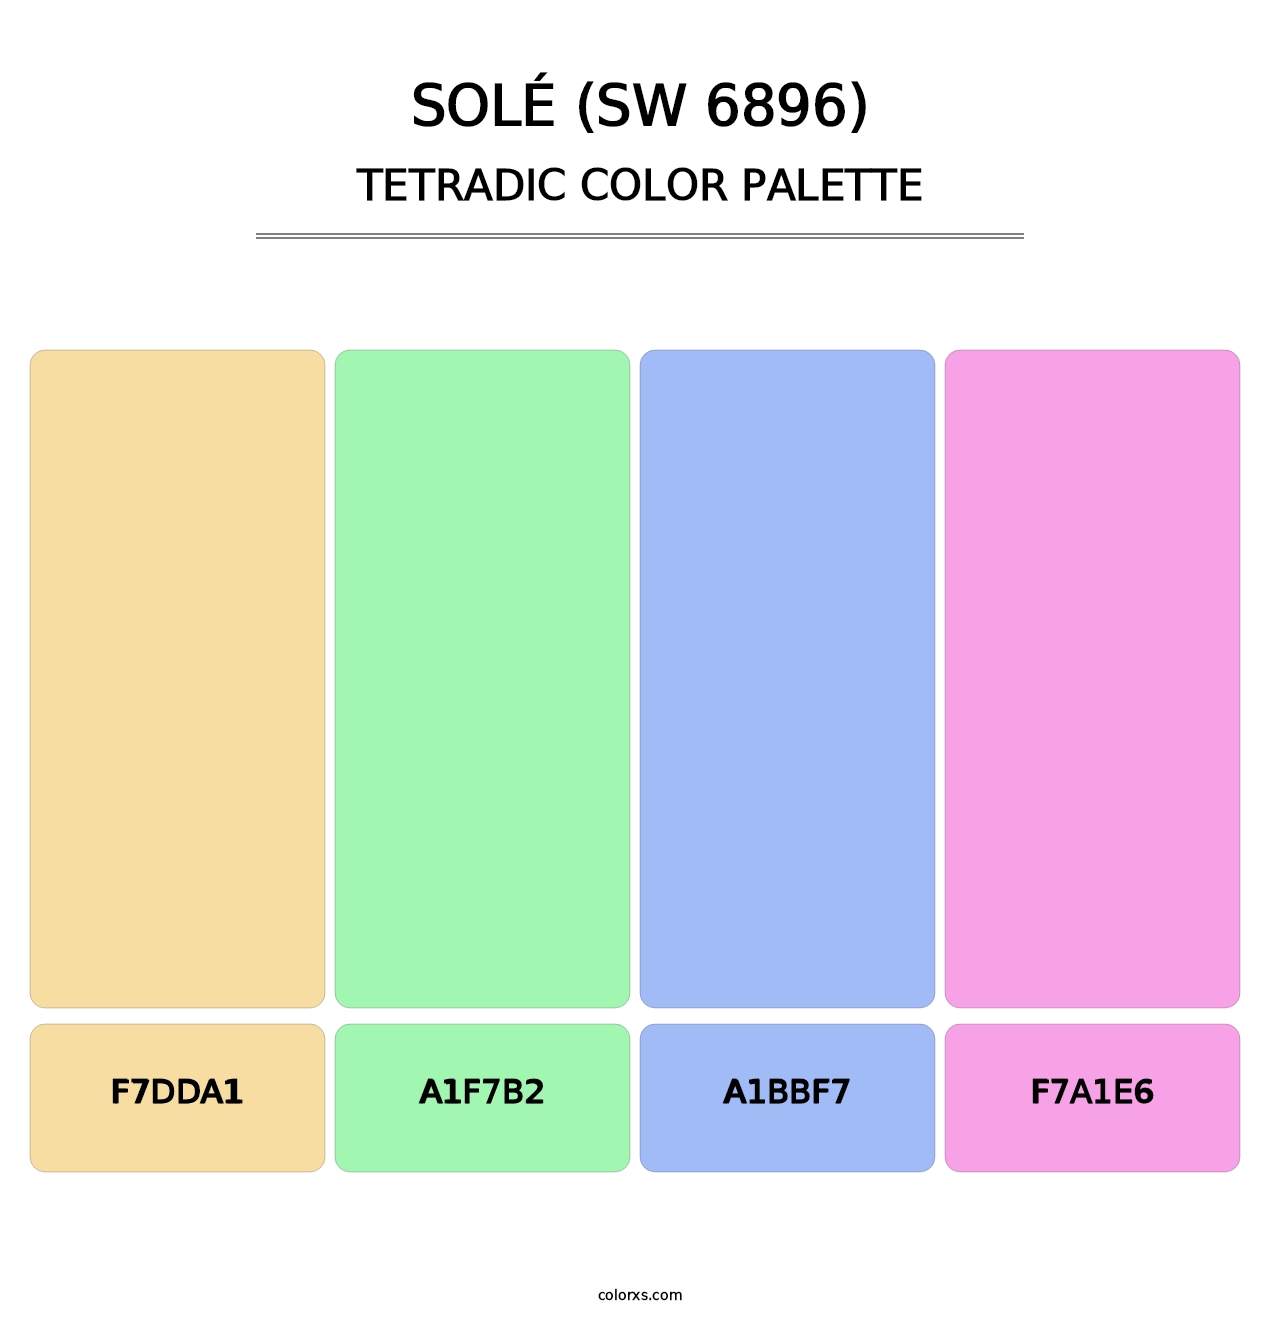 Solé (SW 6896) - Tetradic Color Palette